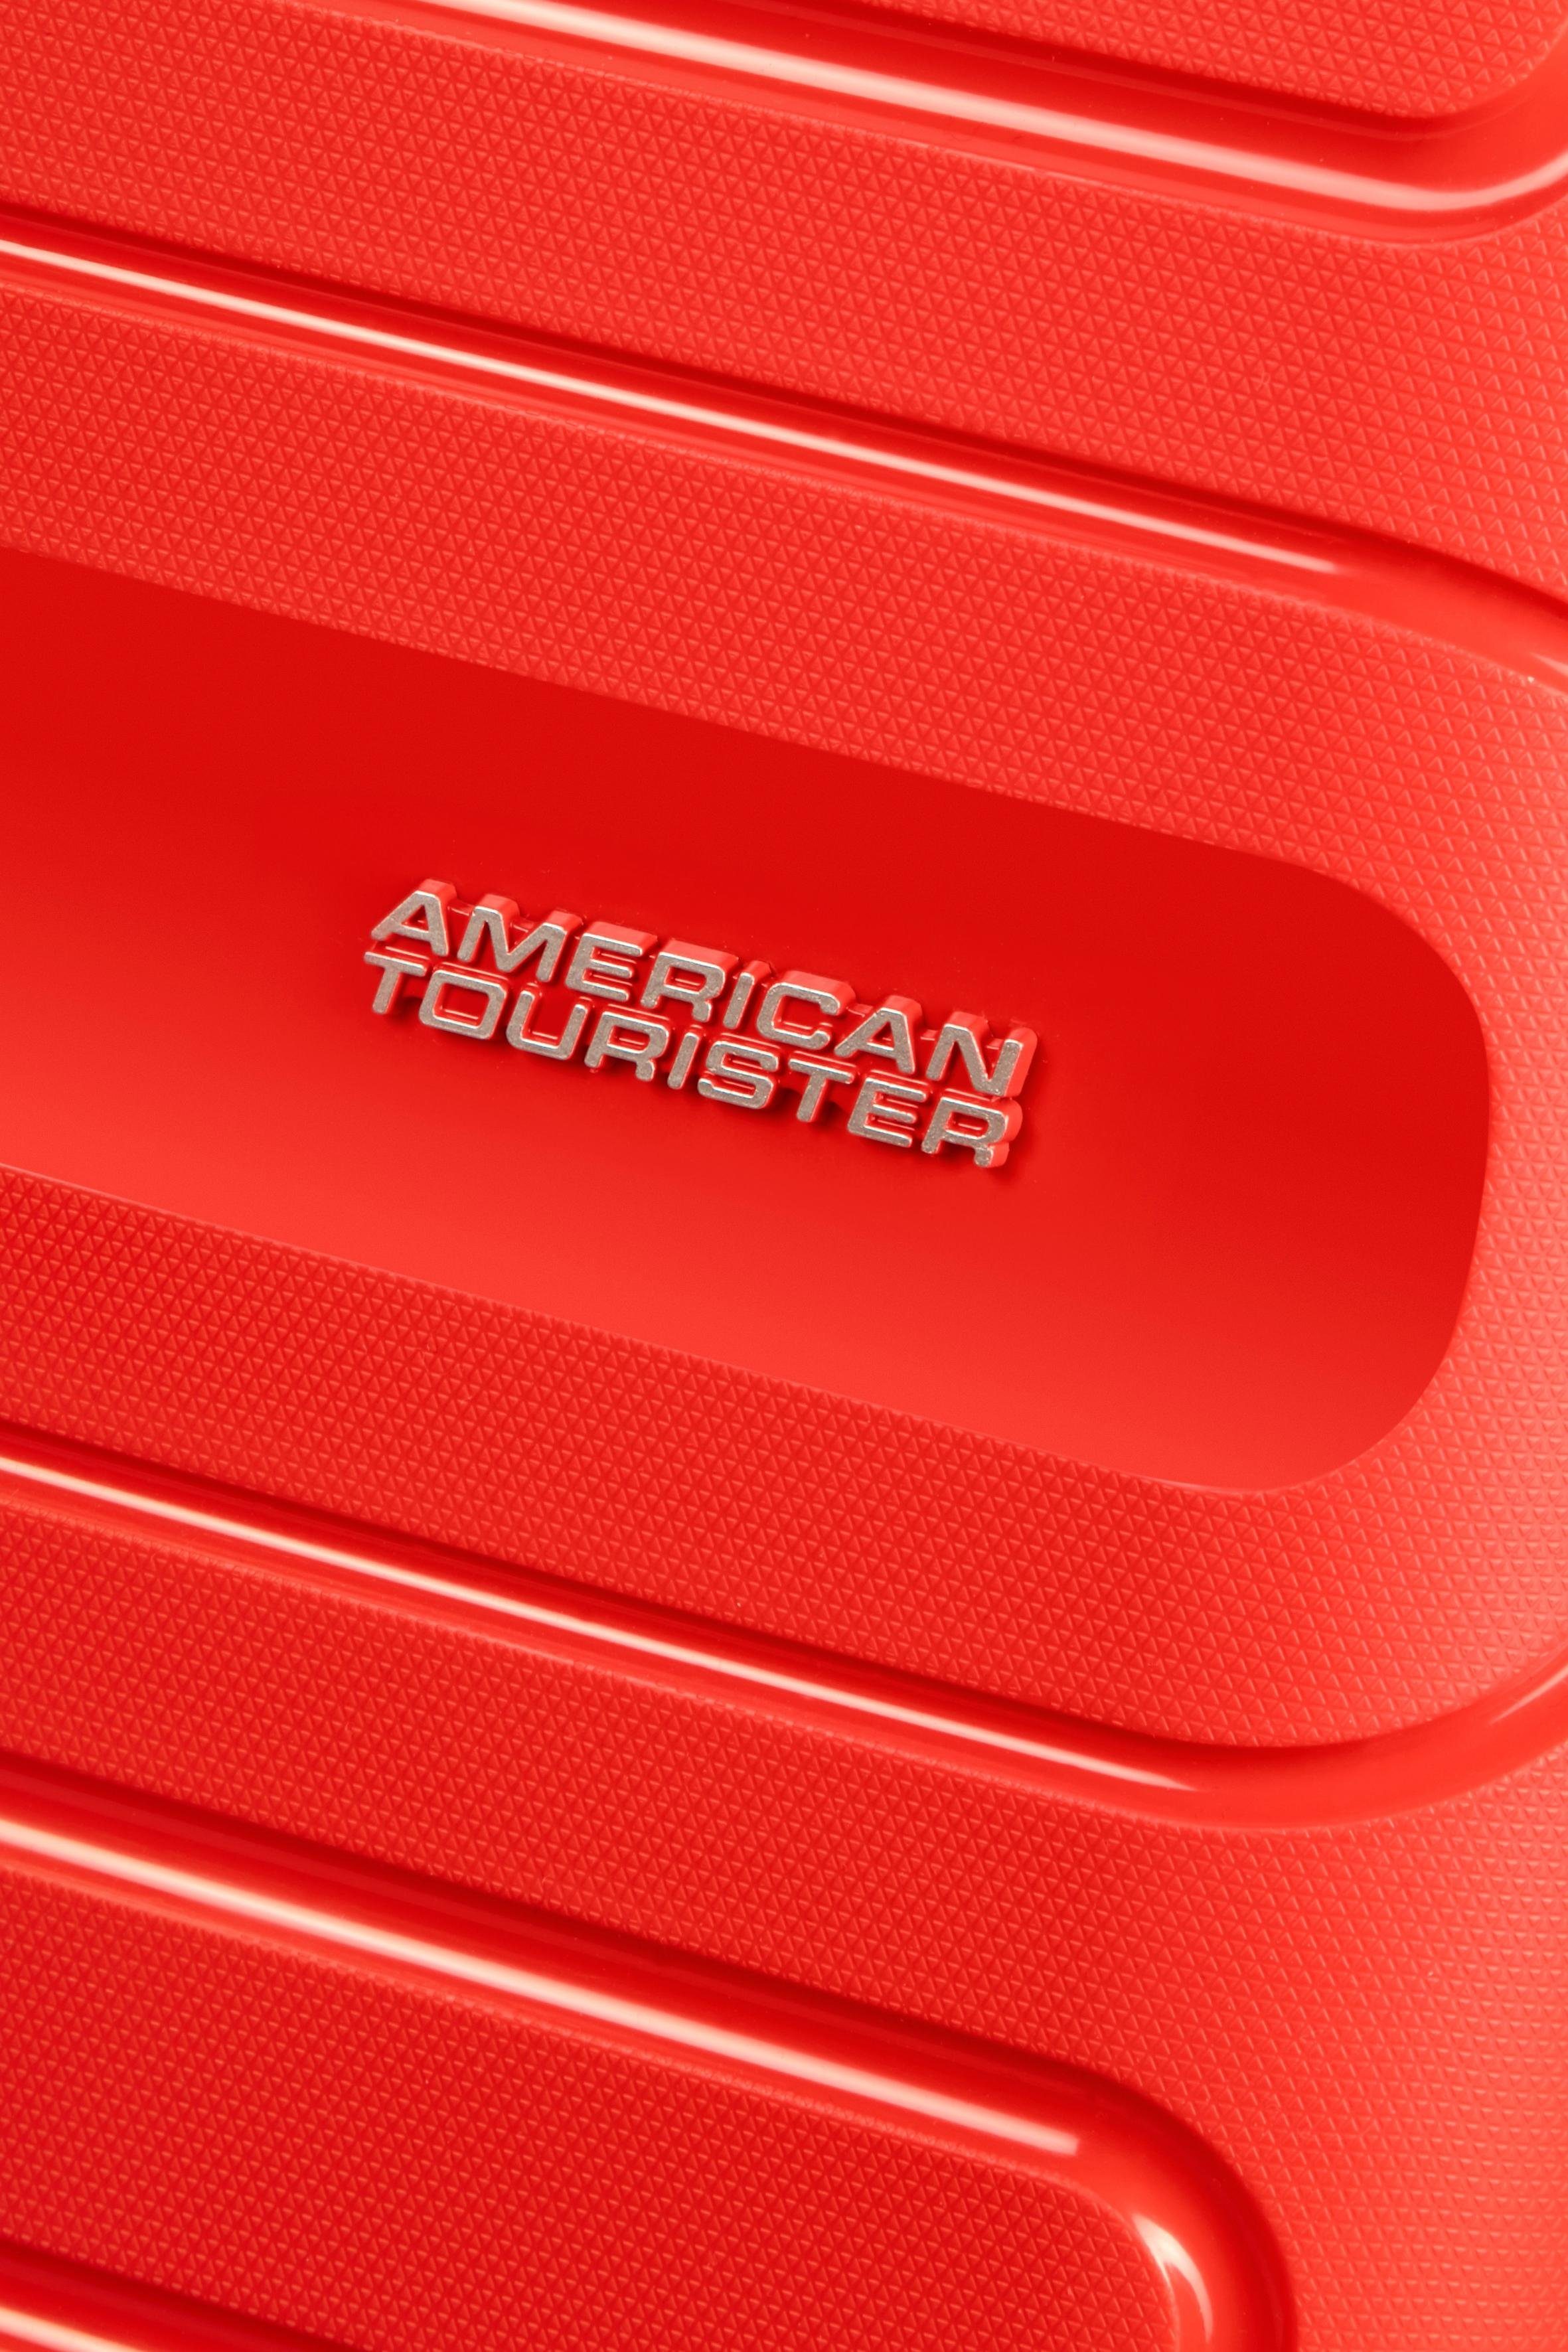 Tourister® American mit Rollen, red Sunside, 68 Hartschalen-Trolley Volumenerweiterung 4 cm, sunset